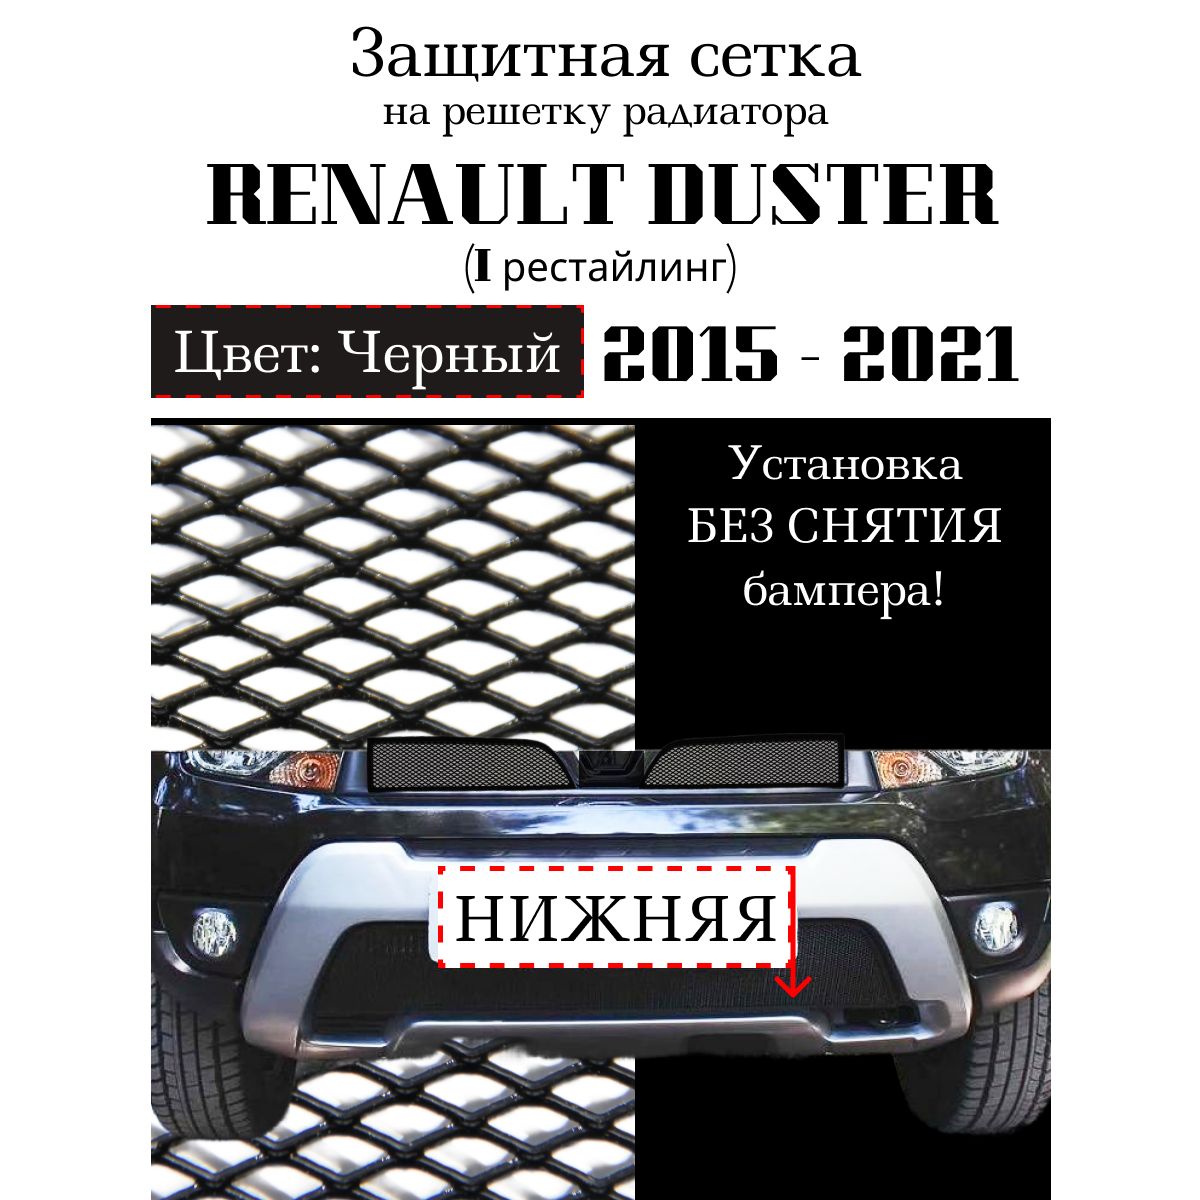 Защитная сетка радиатора [Архив] - Форум Клуба Рено Дастер / Renault Duster Club